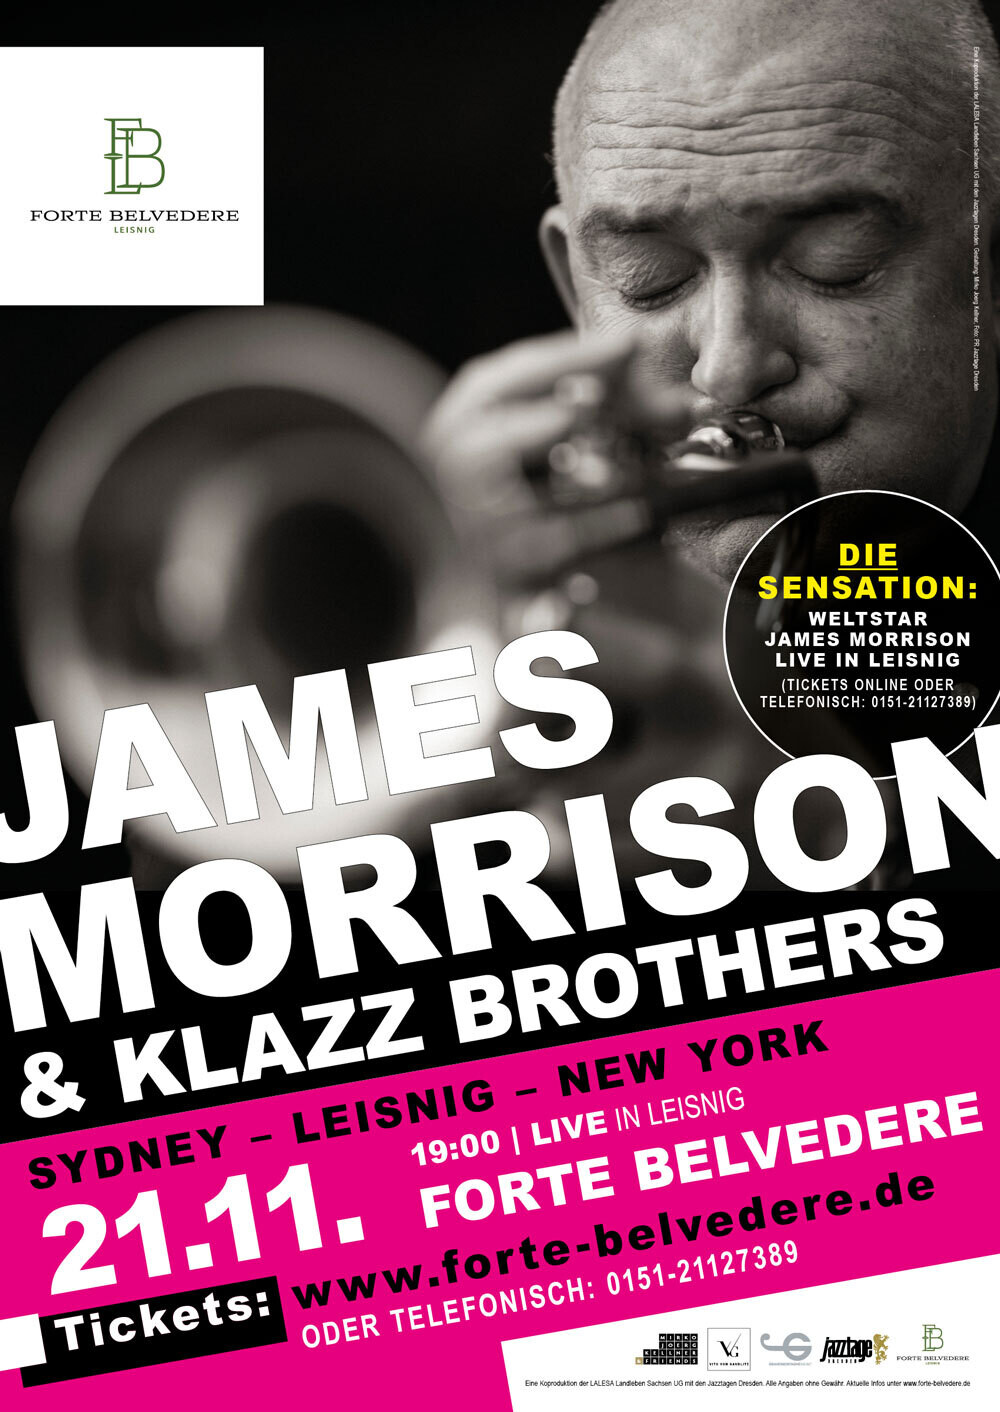 James Morrison + Klazz Brothers | Sydney – Leisnig – New York | Ticket für Konzert im Forte Belvedere Leisnig am 21.11.2022 um 19 Uhr